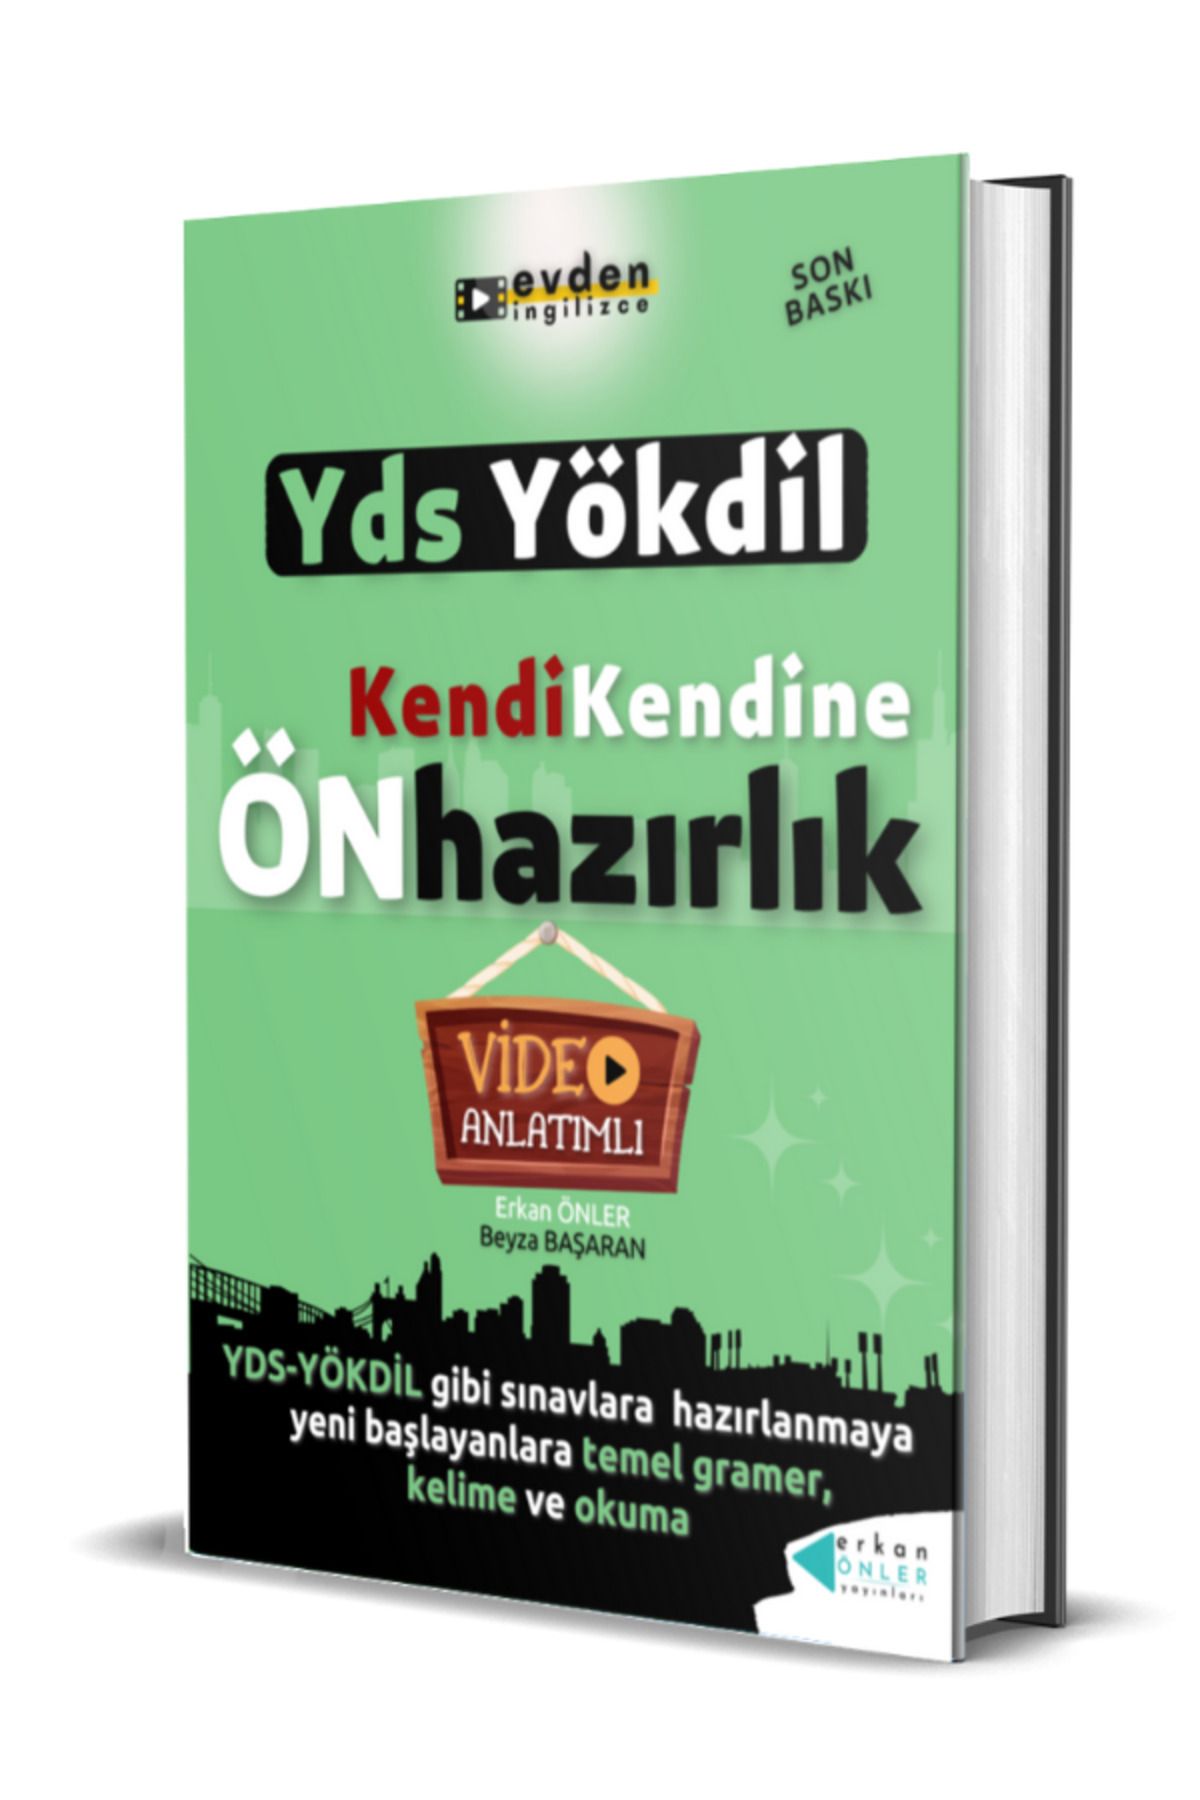 Erkan Önler Yayınları Kendi Kendine Yds-ydt-yökdil Ön Hazırlık (VİDEO DERSLER KİTAP)